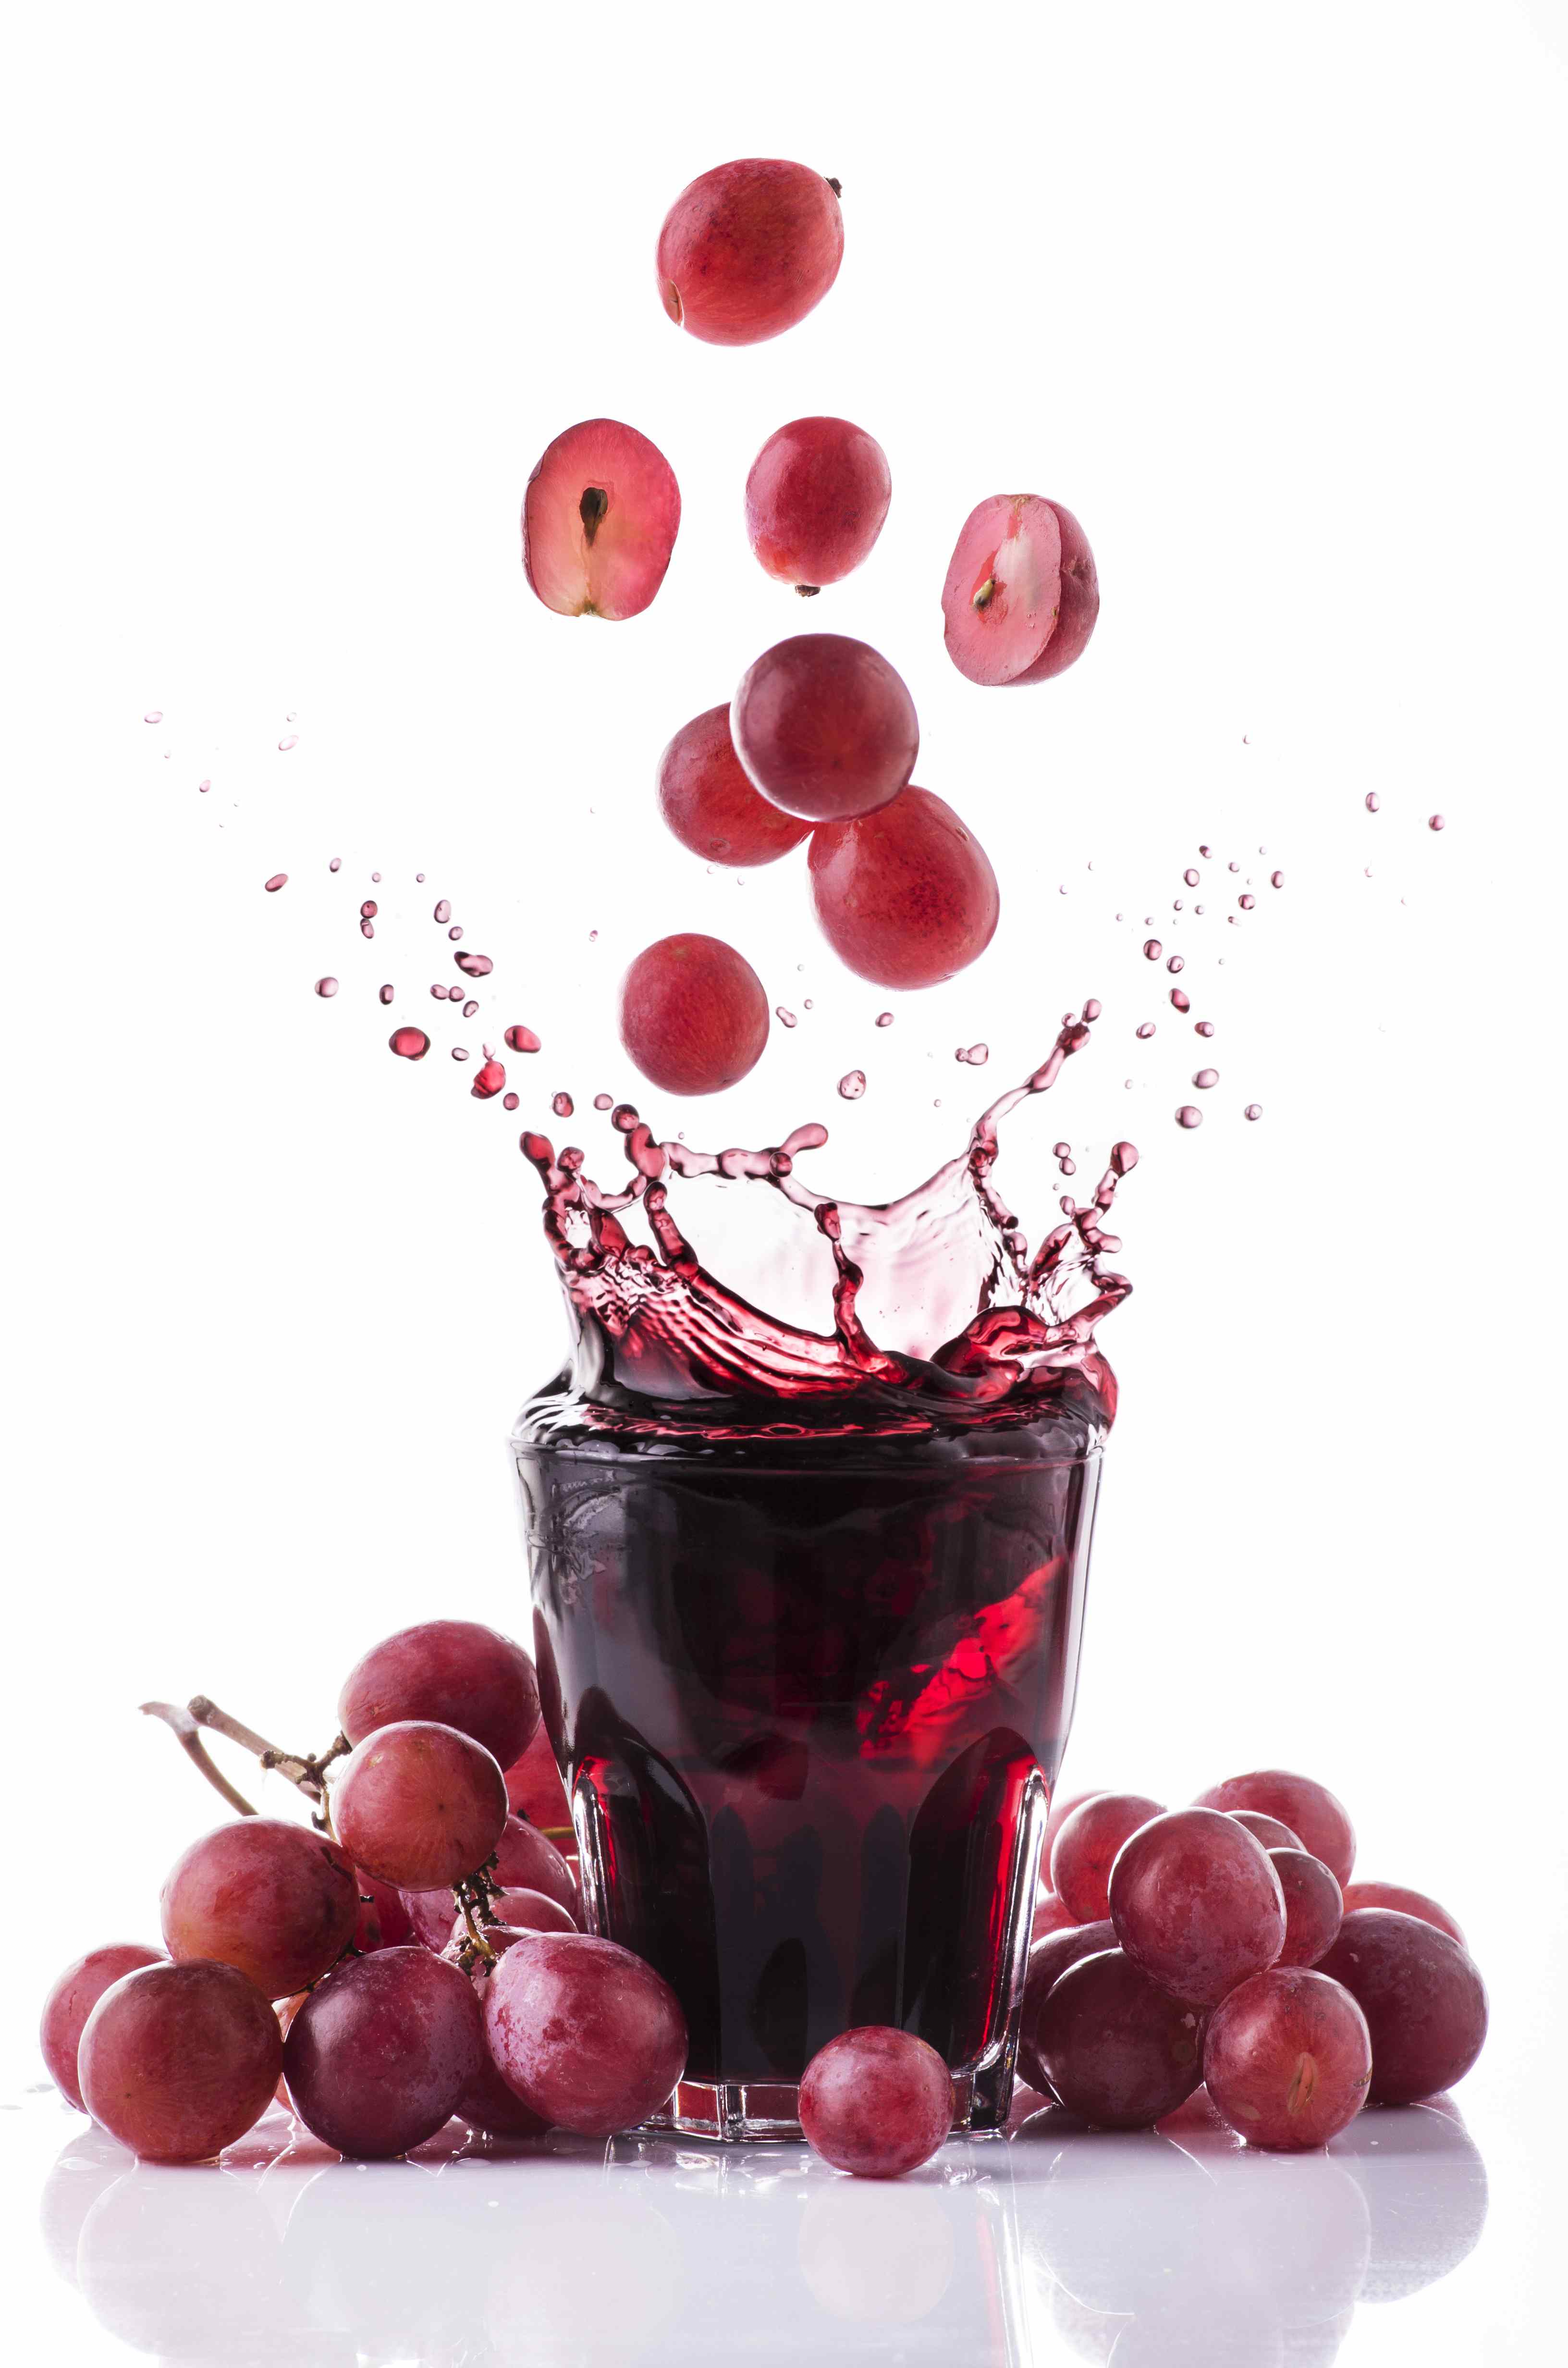 Grape Juice Png - Grape Juice, Transparent background PNG HD thumbnail